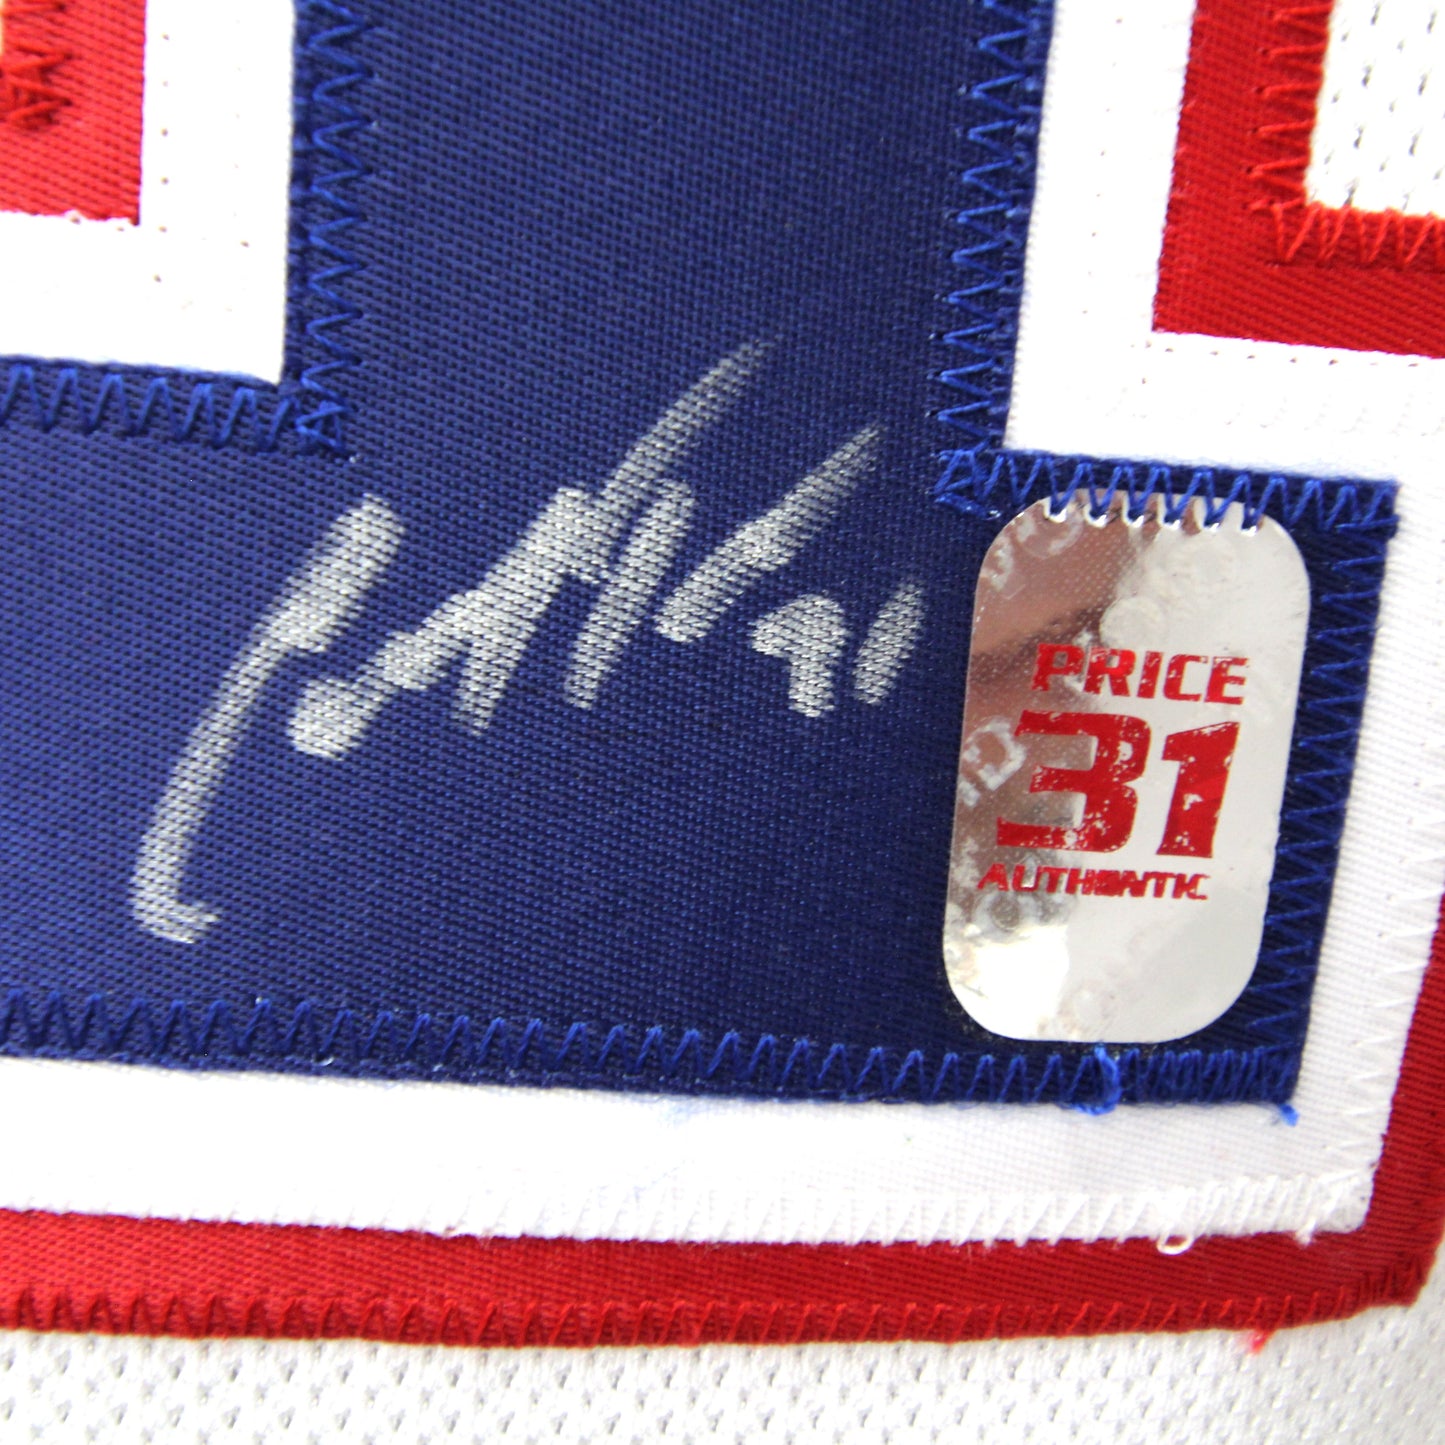 Carey Price - Canadiens - Autographed Jersey / Chandail autographié